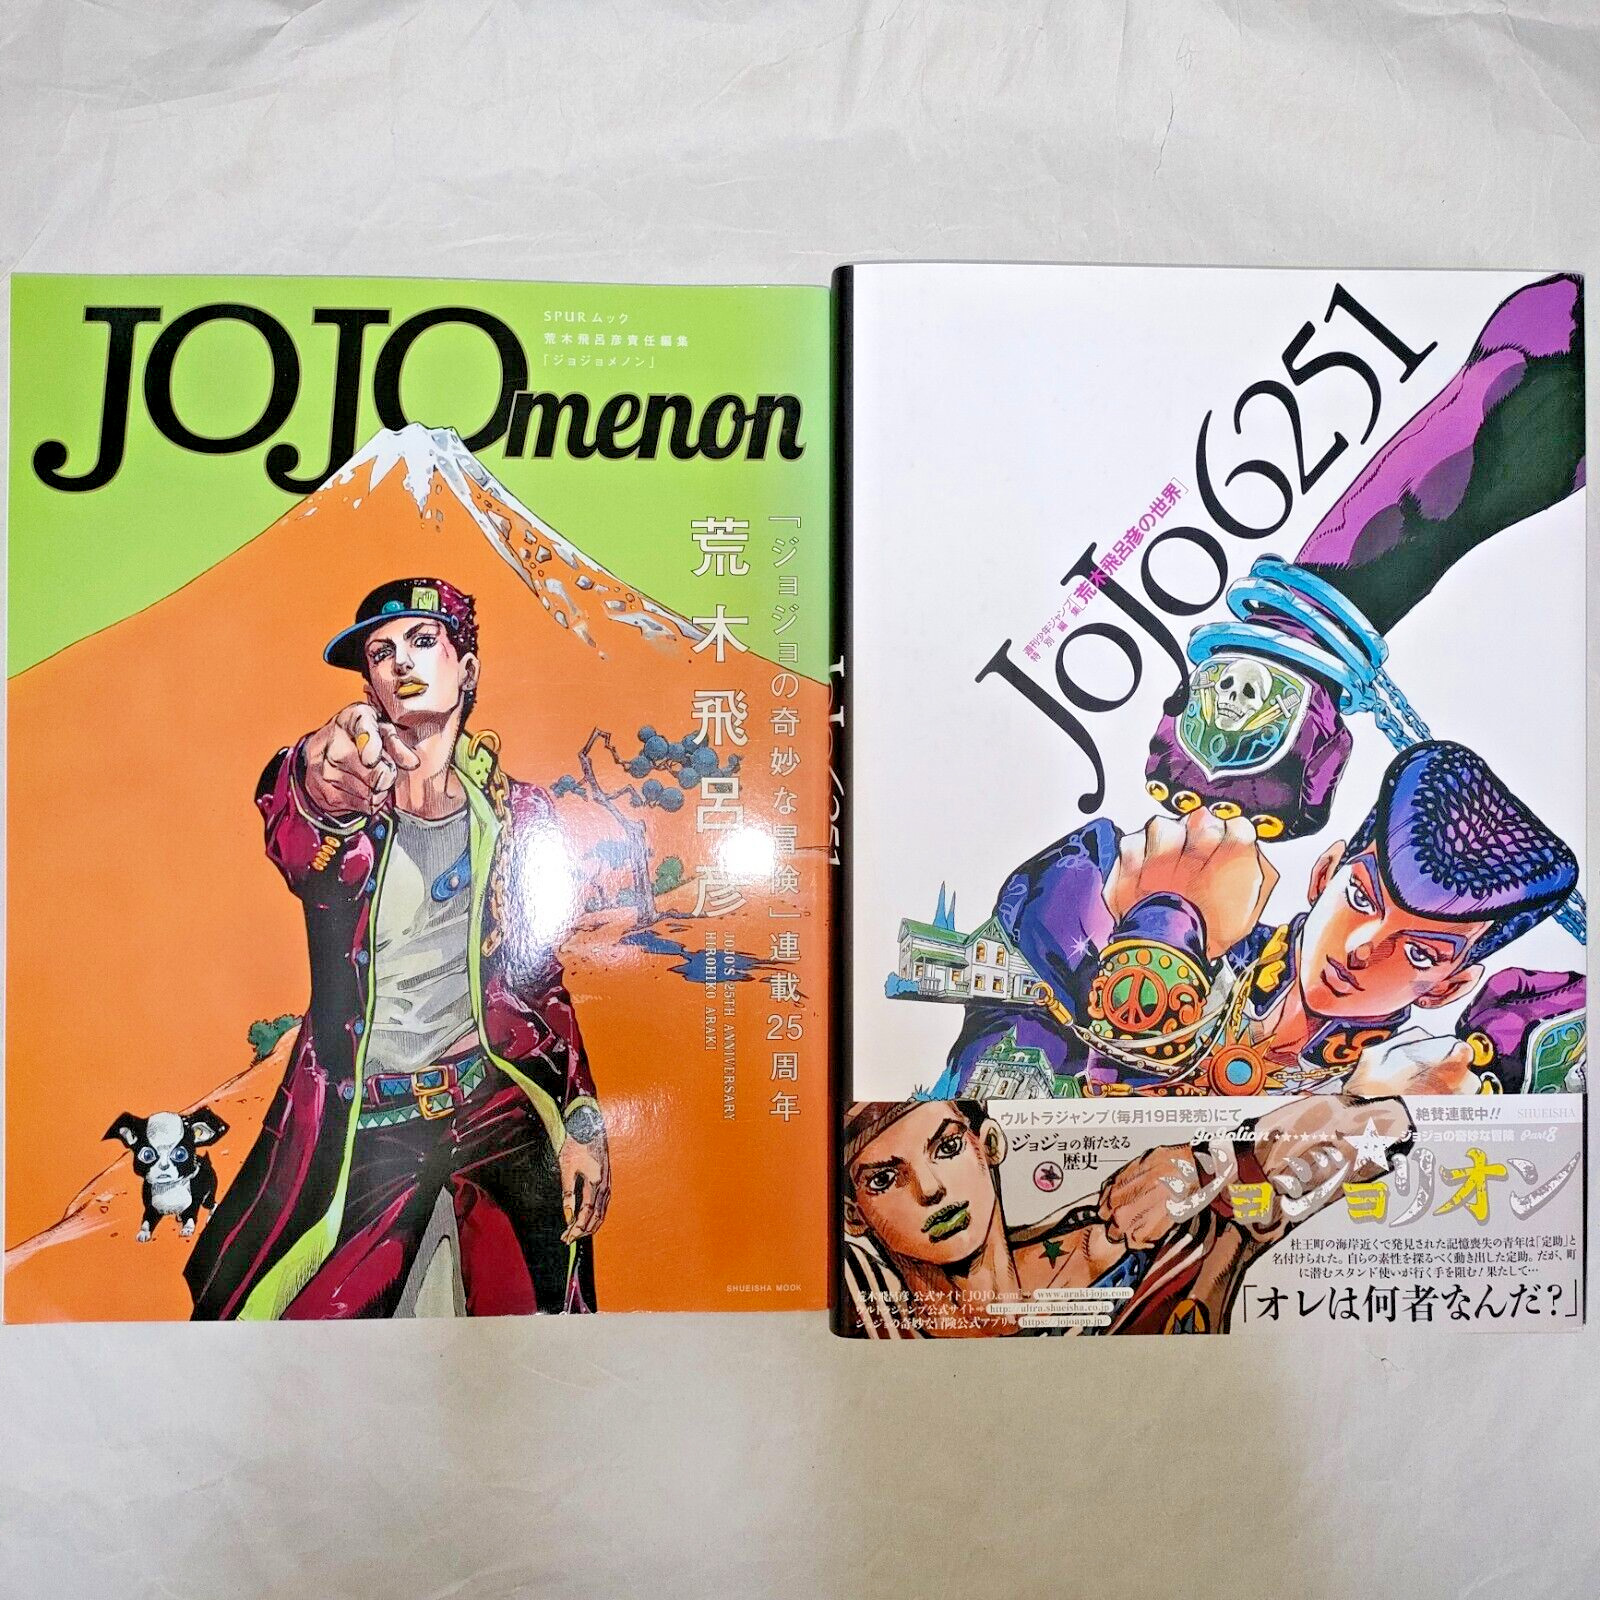 JOJO menon & JoJo 6251 Hirohiko Araki Art book Set With All appendices UPS/DHL